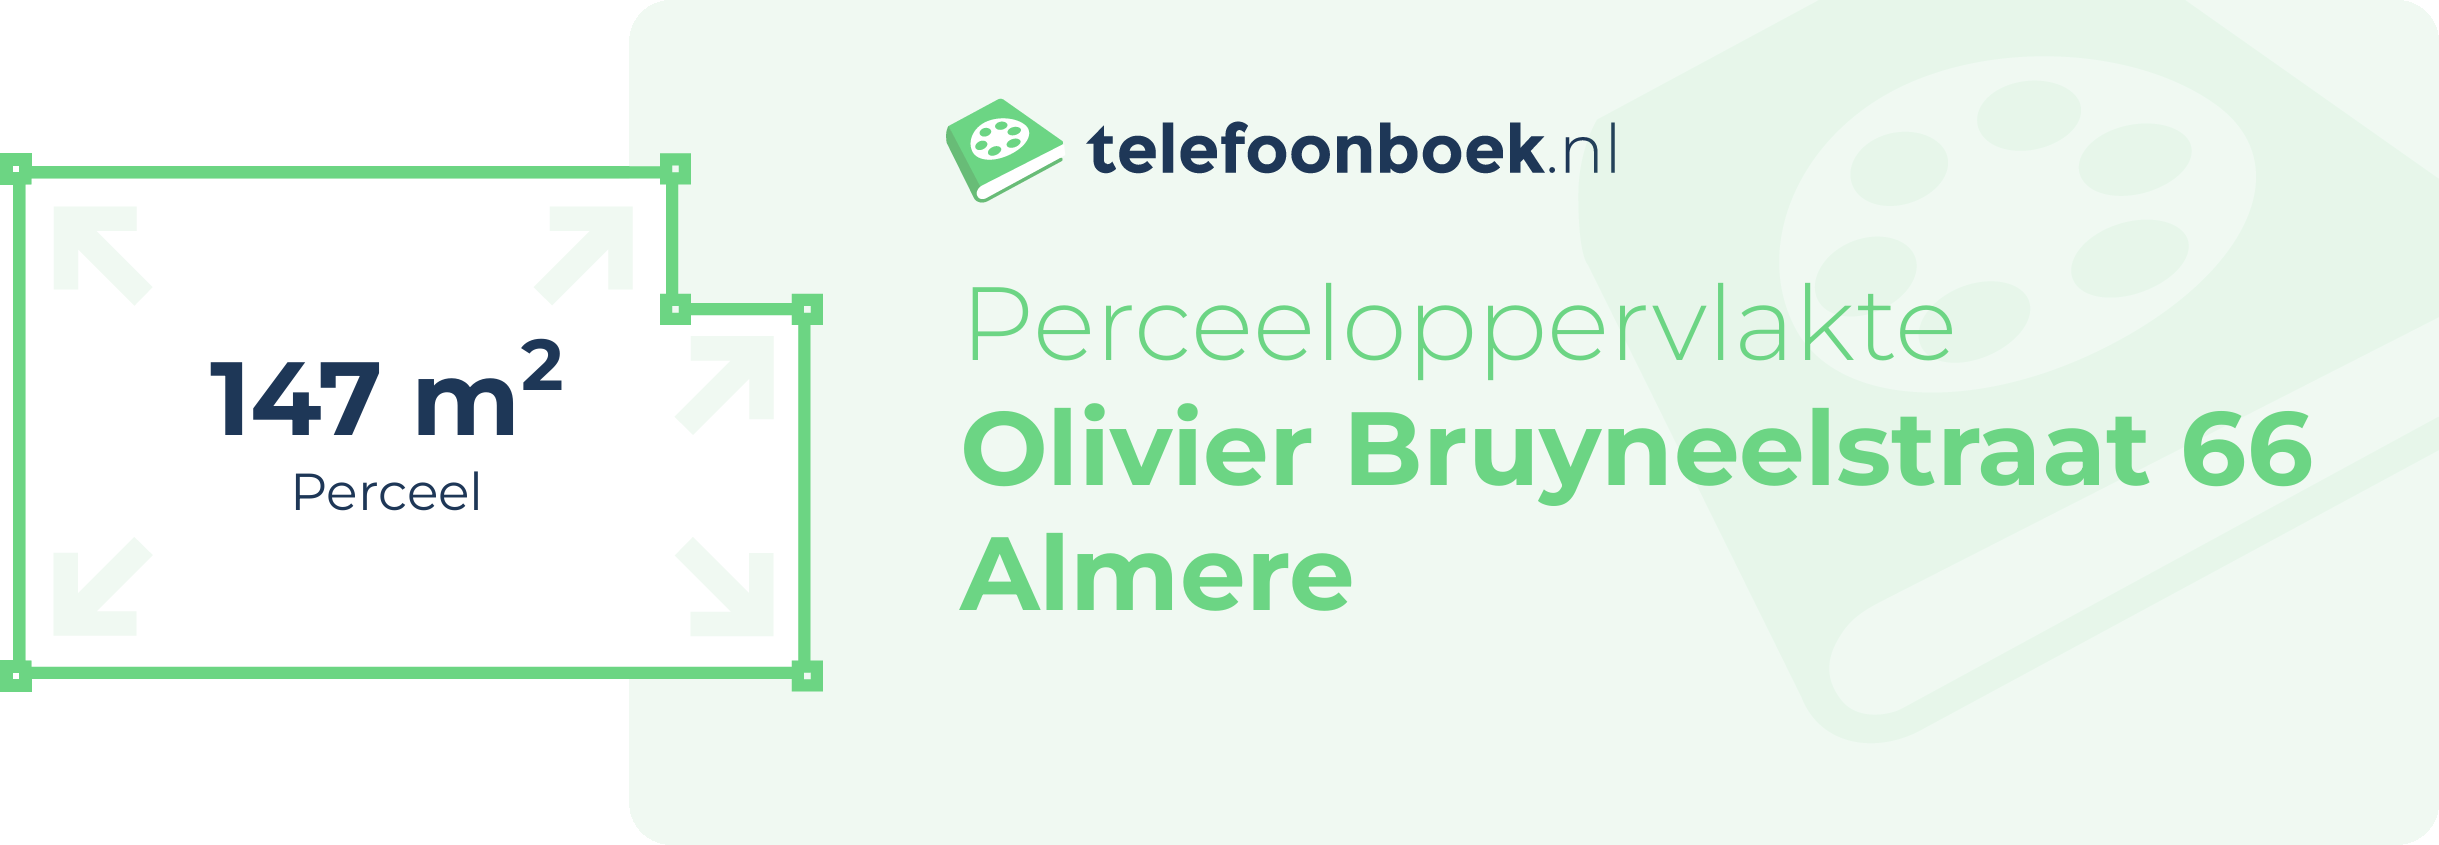 Perceeloppervlakte Olivier Bruyneelstraat 66 Almere